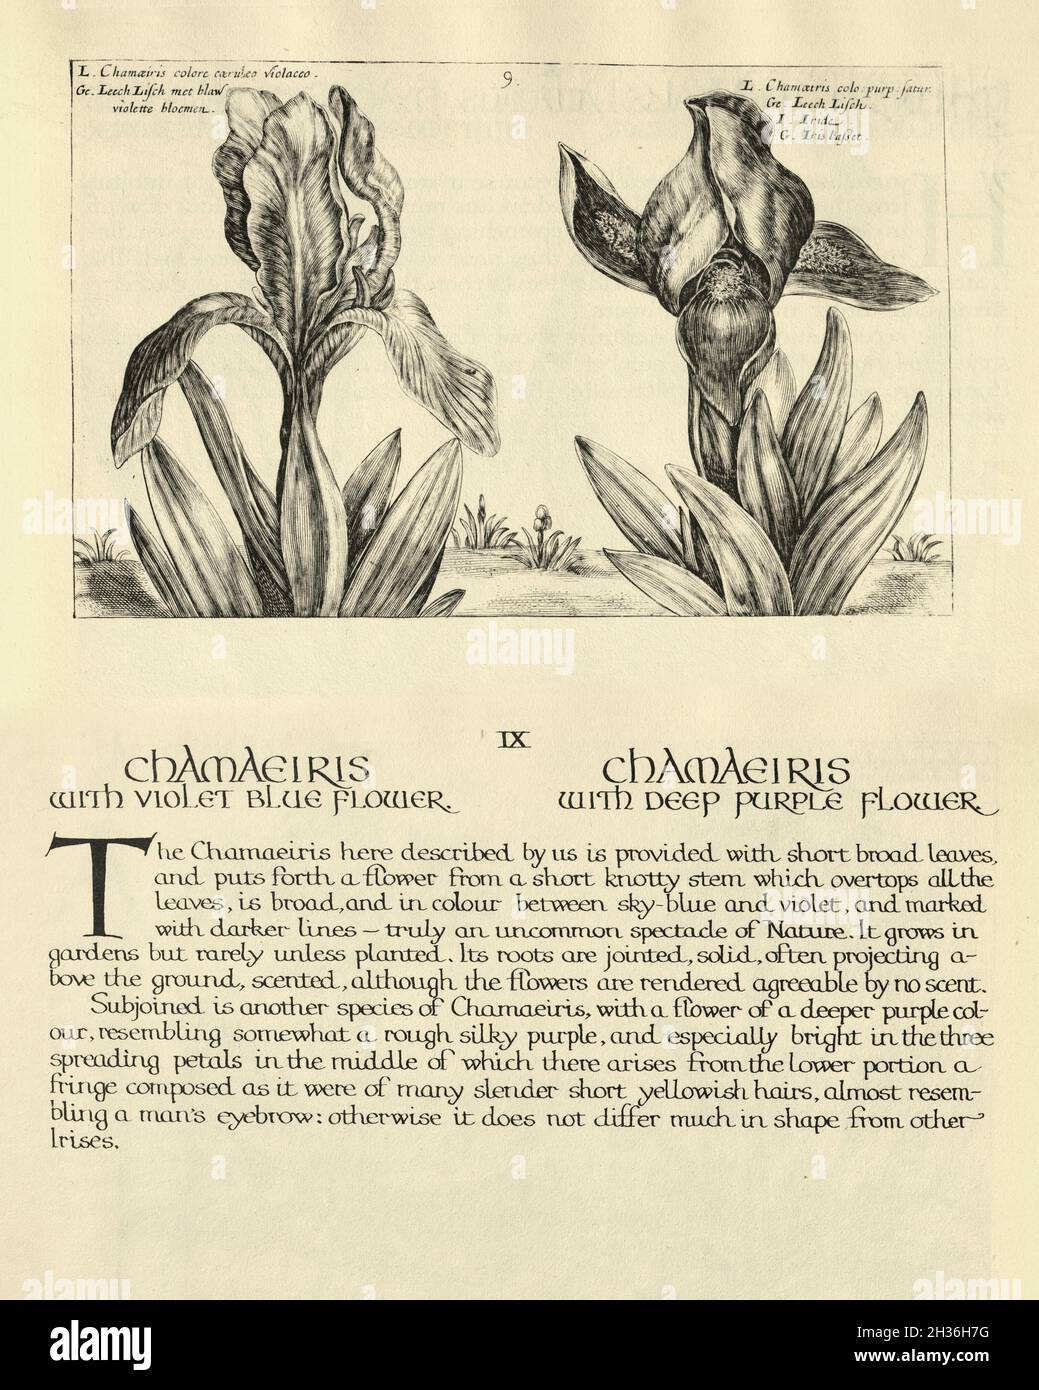 Stampa botanica di Chamairis, Iris, da Hortus Floridus di Crispin de Passe, illustrazione d'epoca Foto Stock